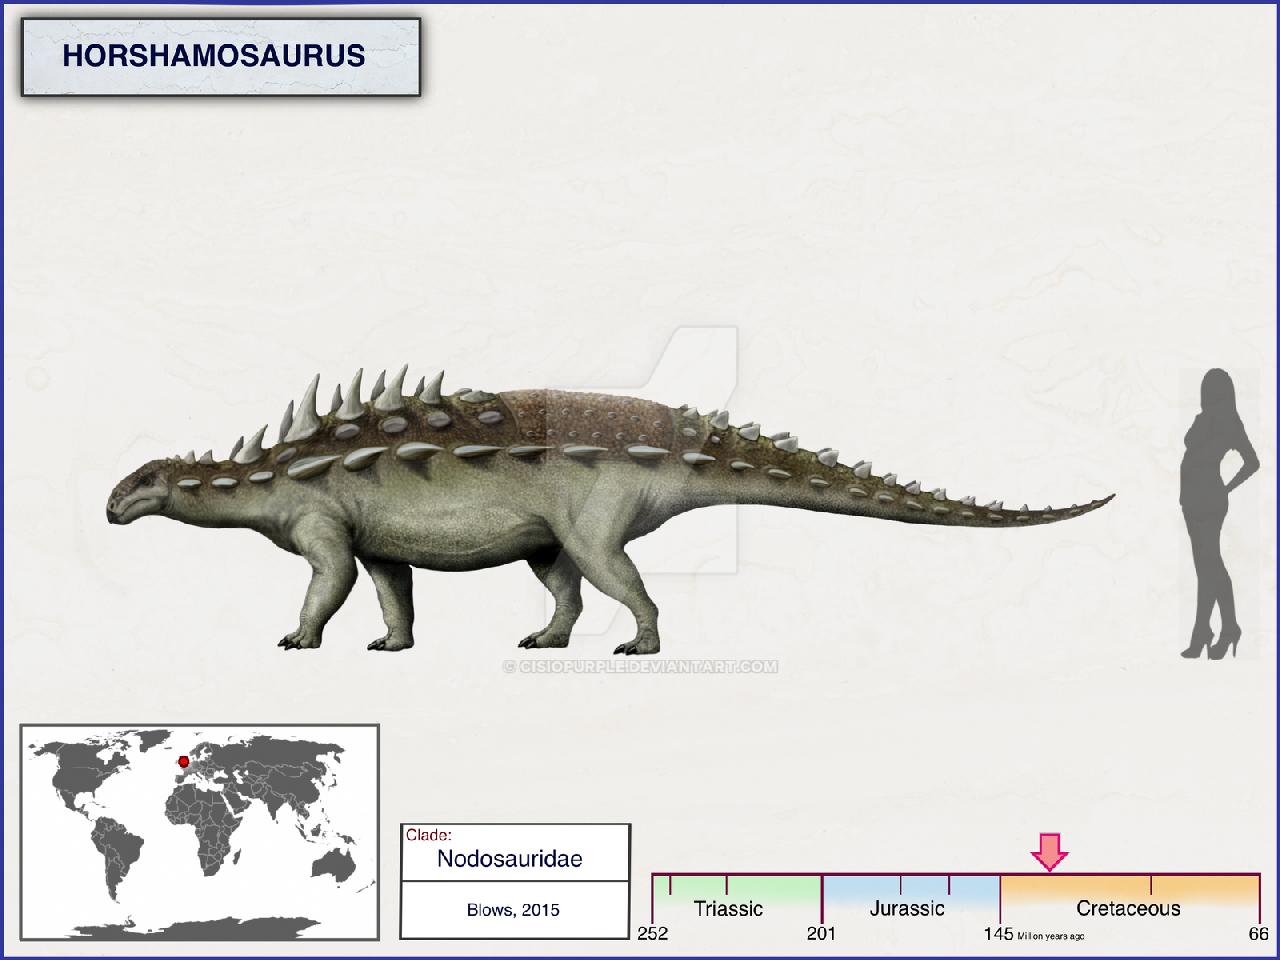 Horshamosaurus, Cretaceous
(Меловой период)